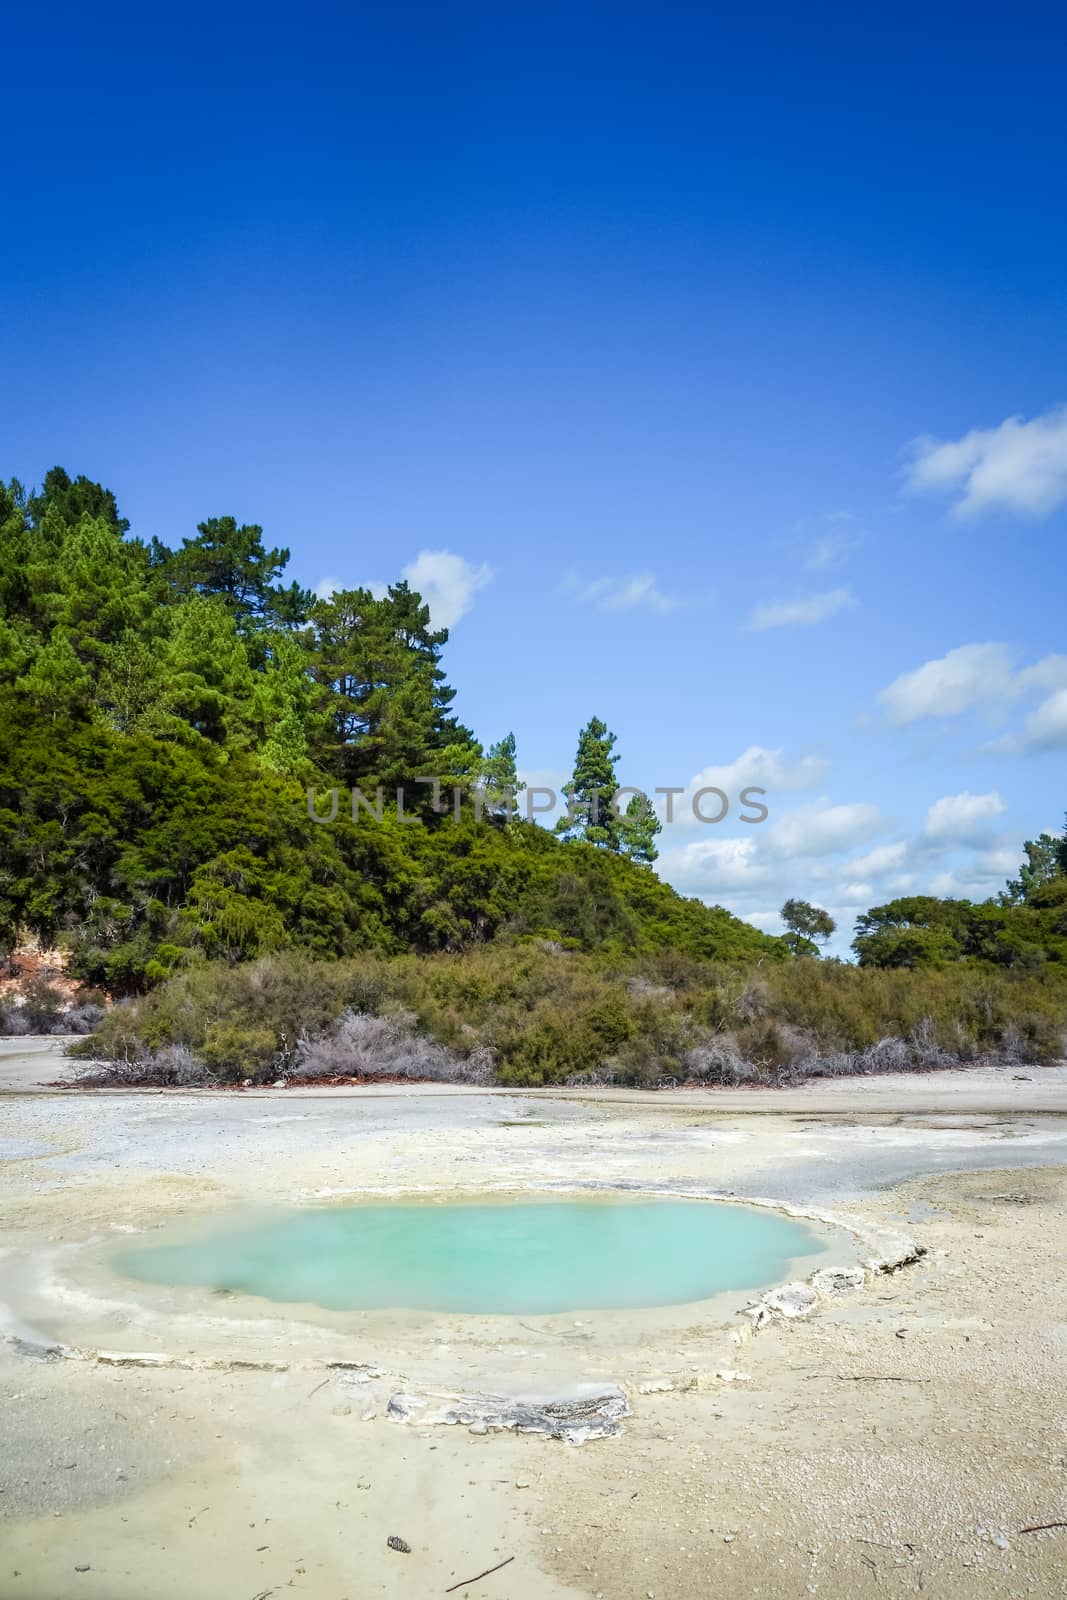 Green lake in Waiotapu, Rotorua, New Zealand by daboost